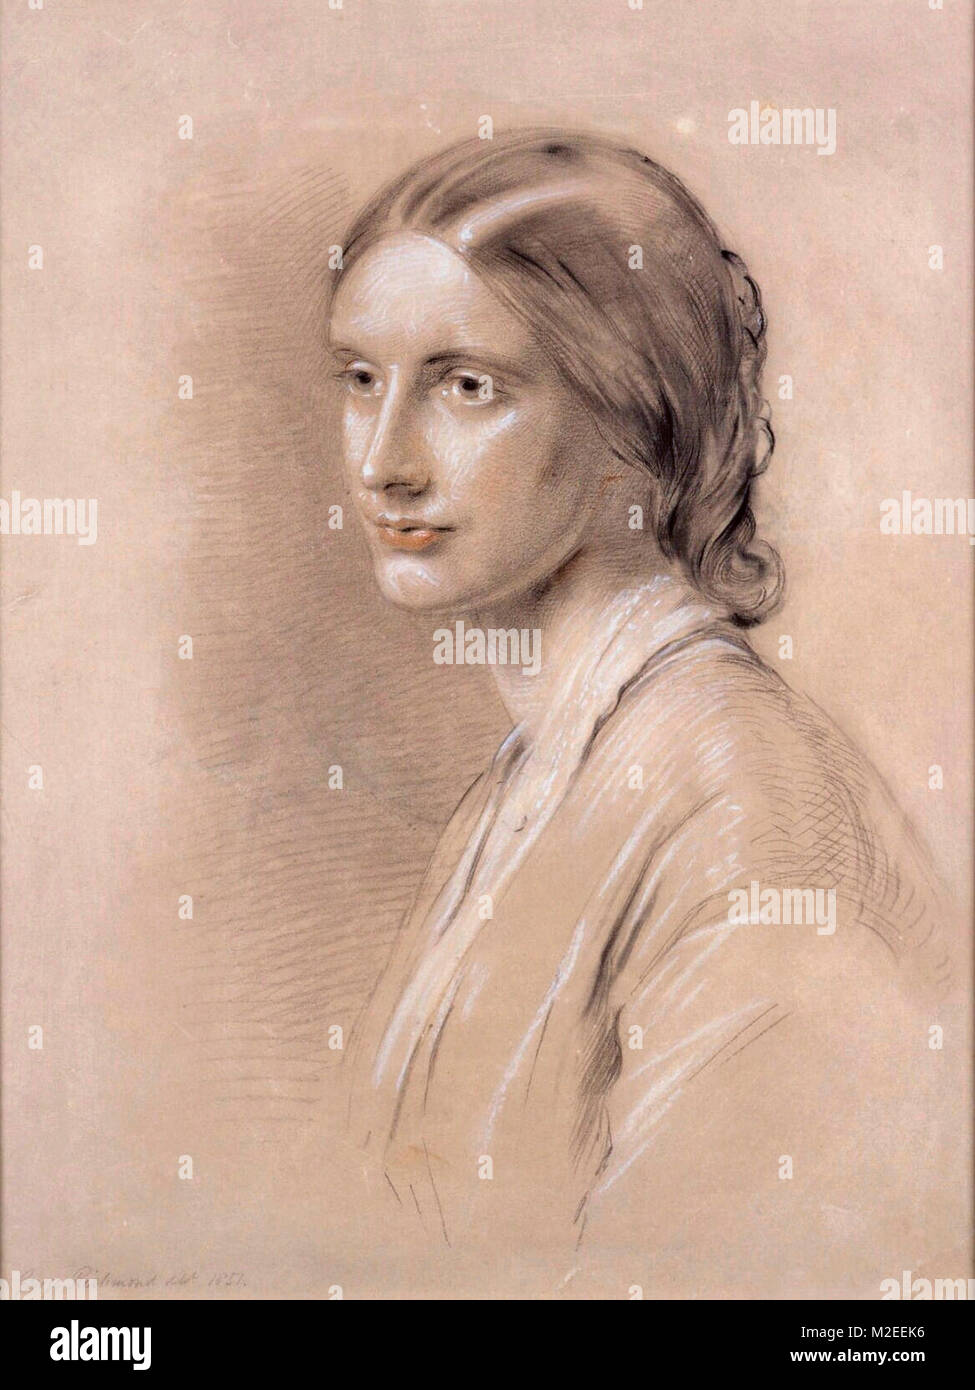 Josephine Butler en 1851, portrait par George Richmond. Josephine Elizabeth Butler, nee gris ; 13 avril 1828 - 30 décembre 1906 était un réformateur social et féministe à l'époque victorienne. Banque D'Images